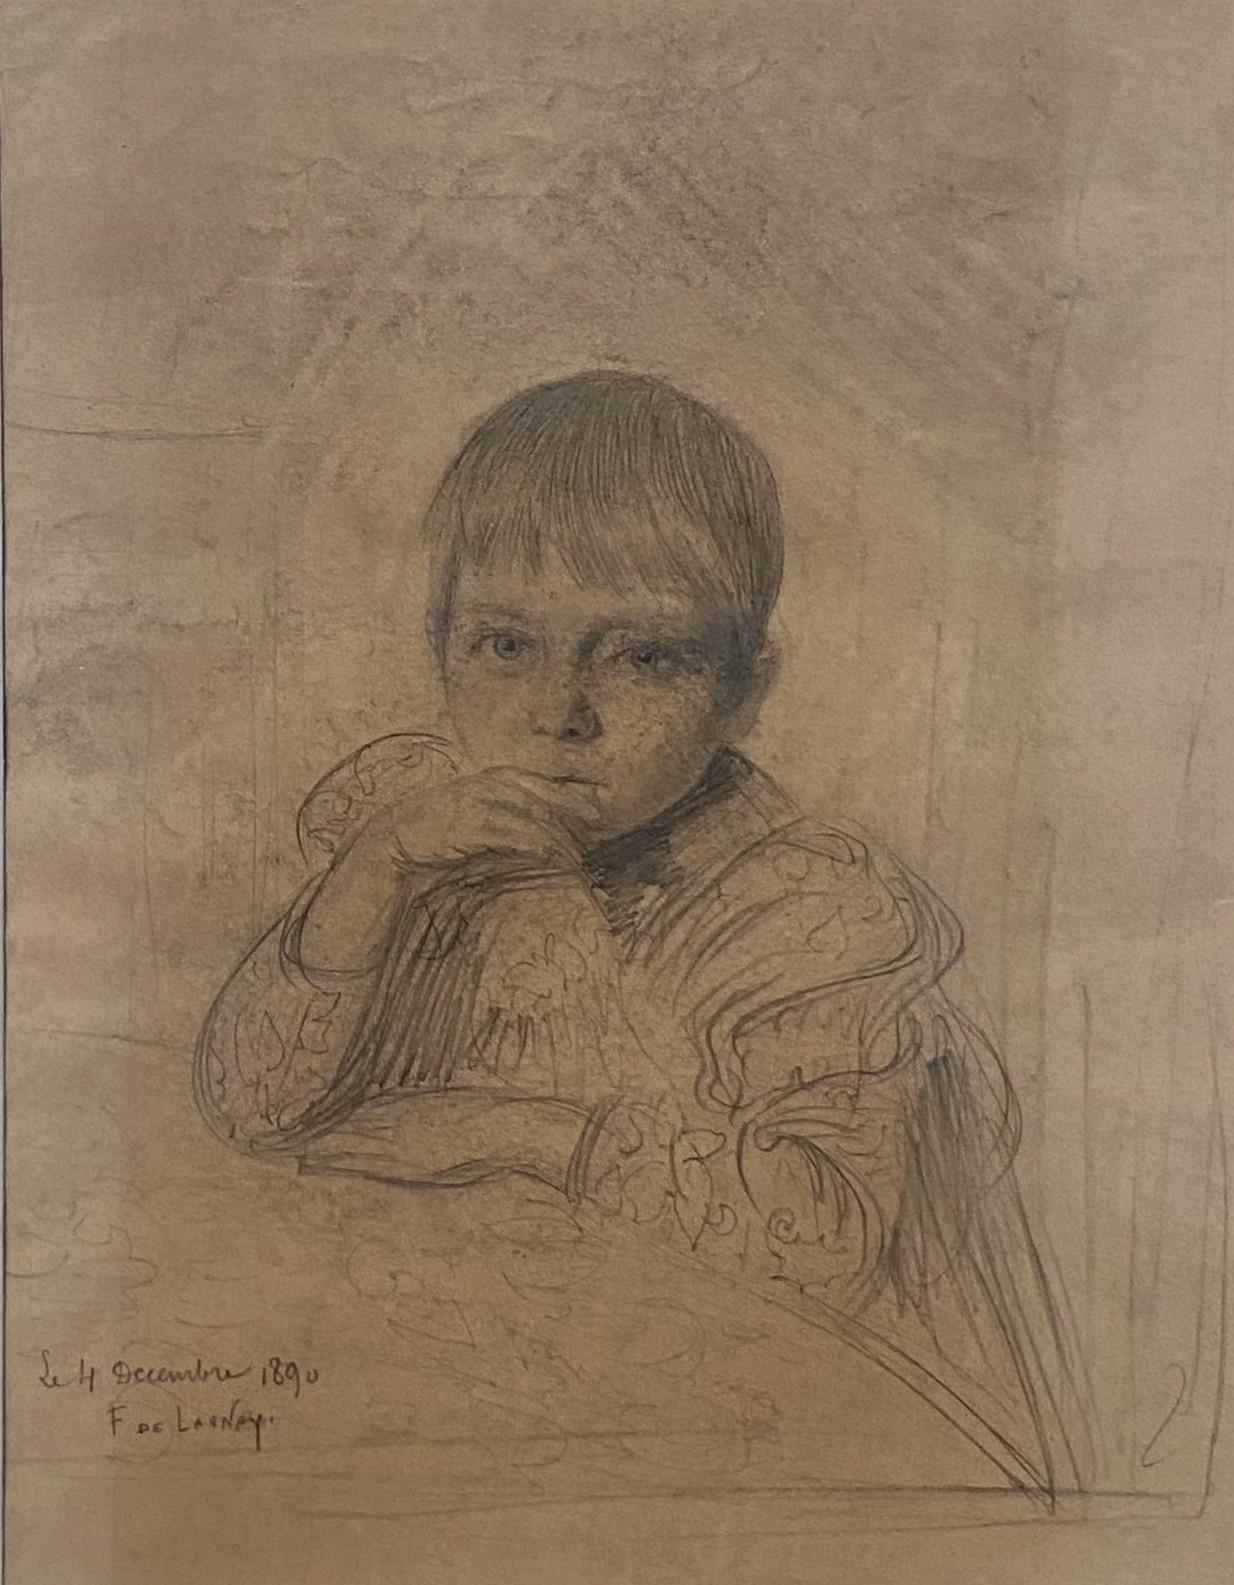 Fernand de Launay (1838-1904)
Porträt eines Kindes, wahrscheinlich der Tochter des Künstlers
Bleistift auf Papier
Signiert und datiert "4 septembre 1890" unten links
27 x 21 cm
In recht gutem Zustand : Spuren von Insolation des Papiers auf der